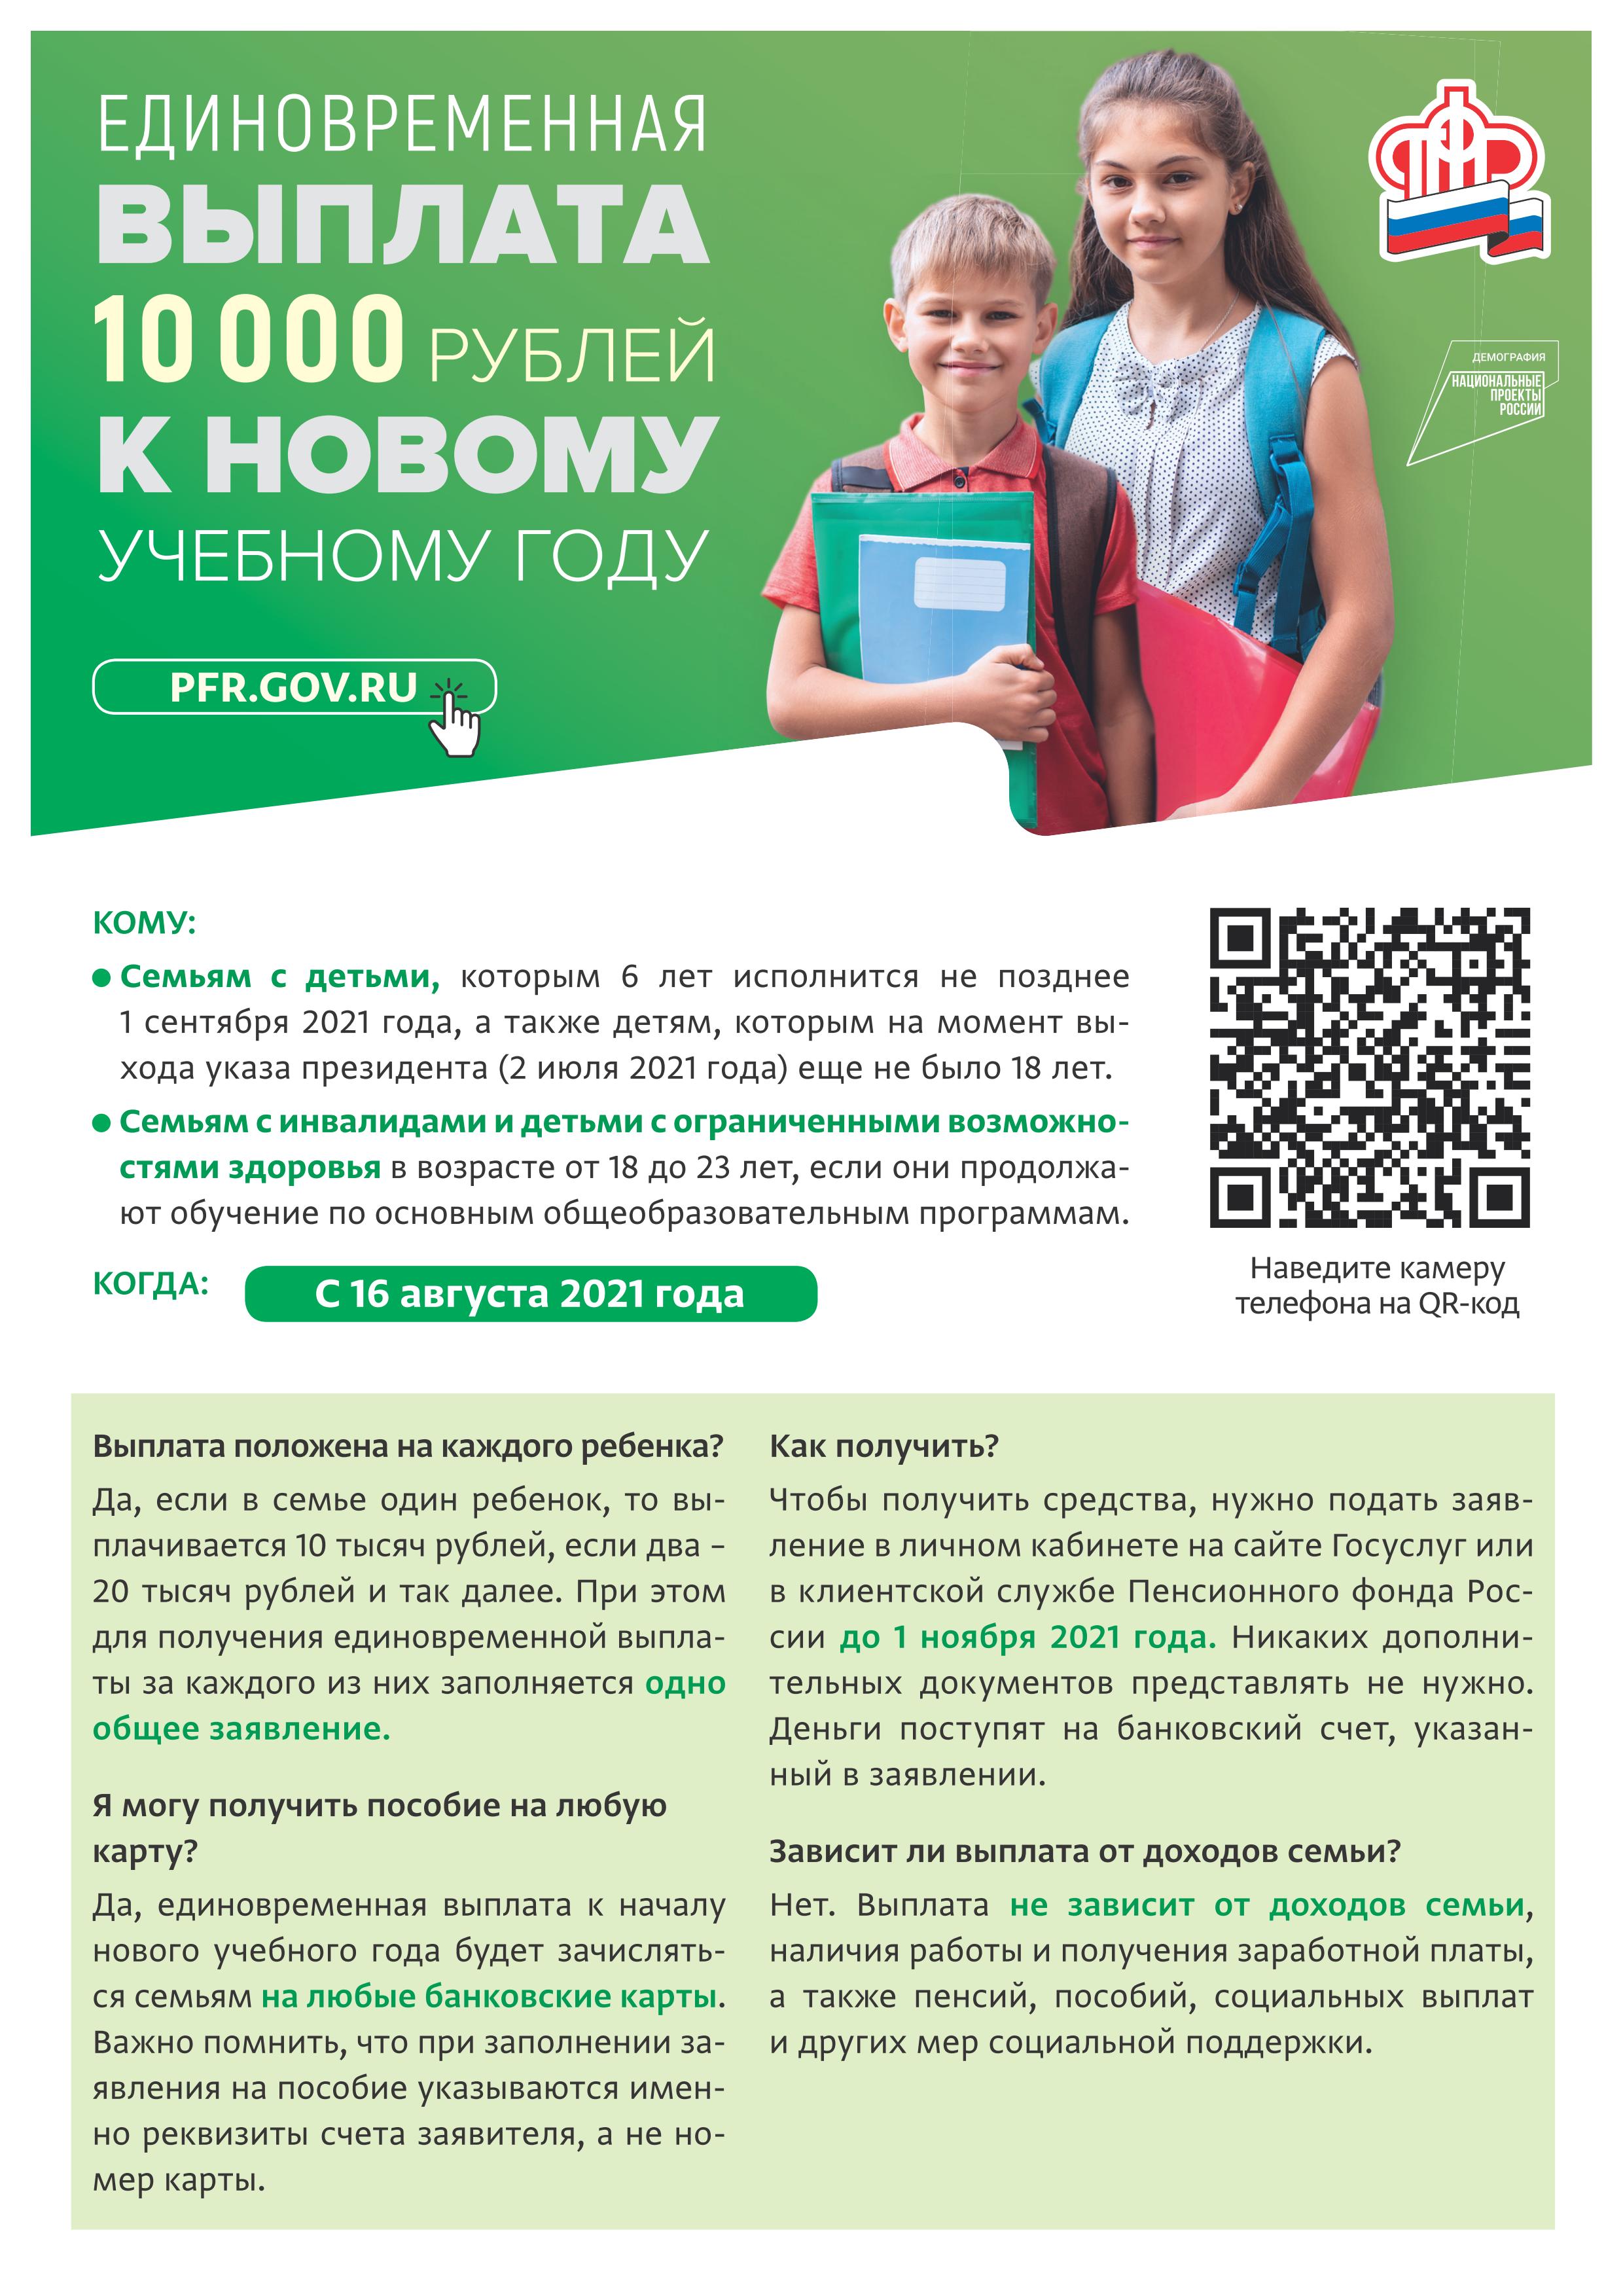 Единовременная выплата 10000 рублей к новому учебному году